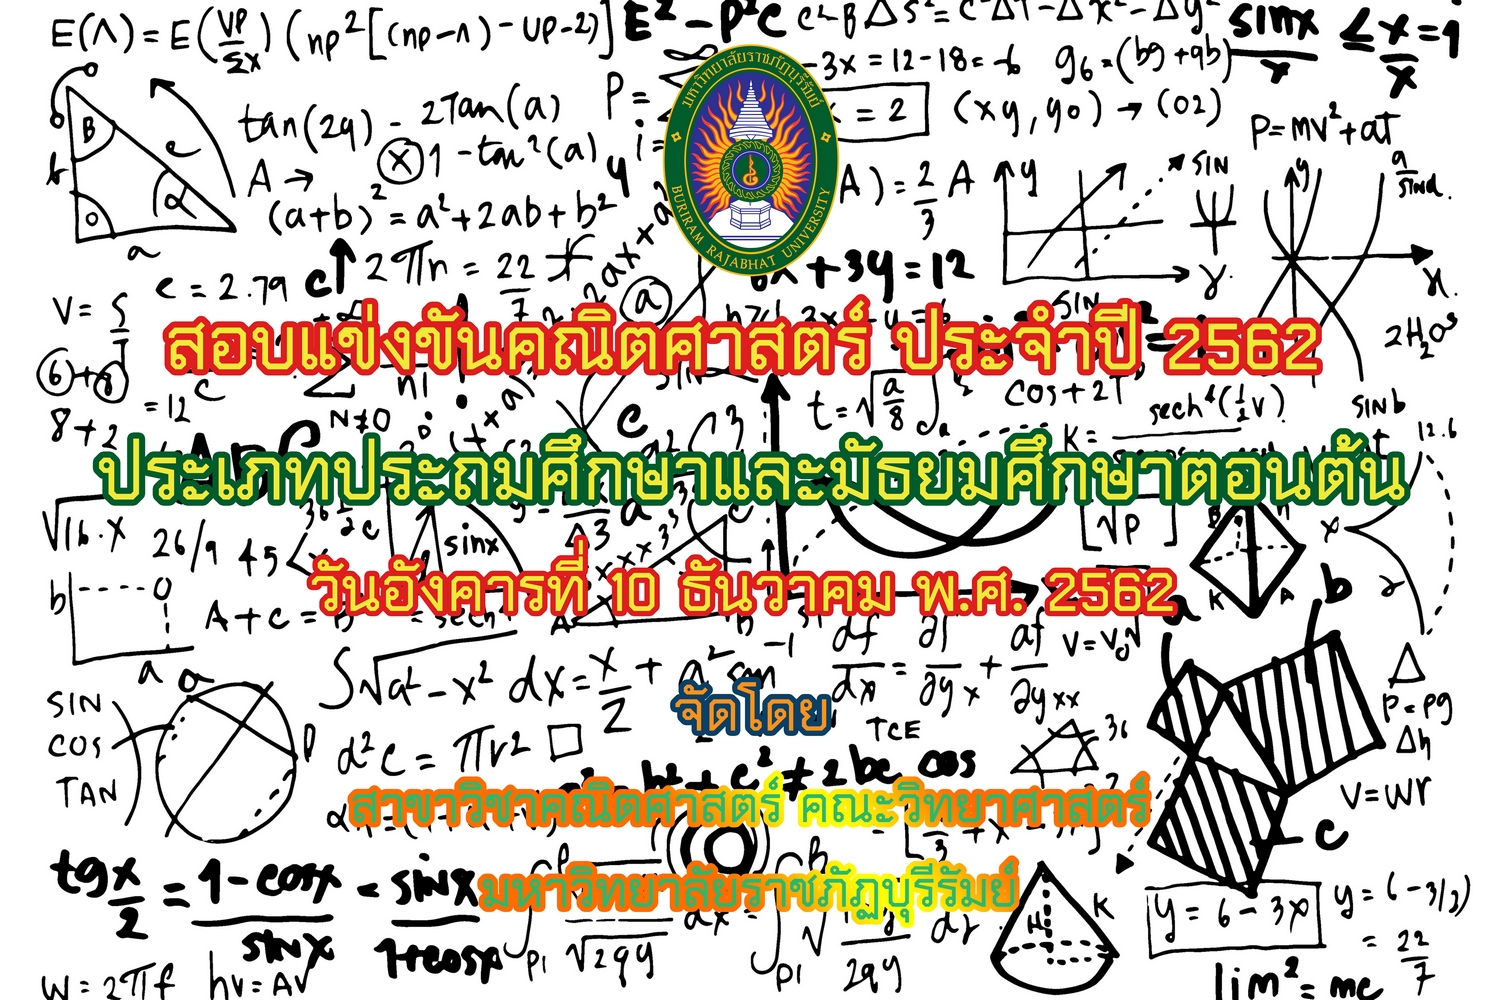 สอบแข่งขันคณิตศาสตร์ ระดับประถมศึกษาและระดับมัธยมศึกษาตอนต้น ประจำปี 2562 โดยสาขาวิชาคณิตศาสตร์ มหาวิทยาลัยราชภัฏบุรีรัมย์